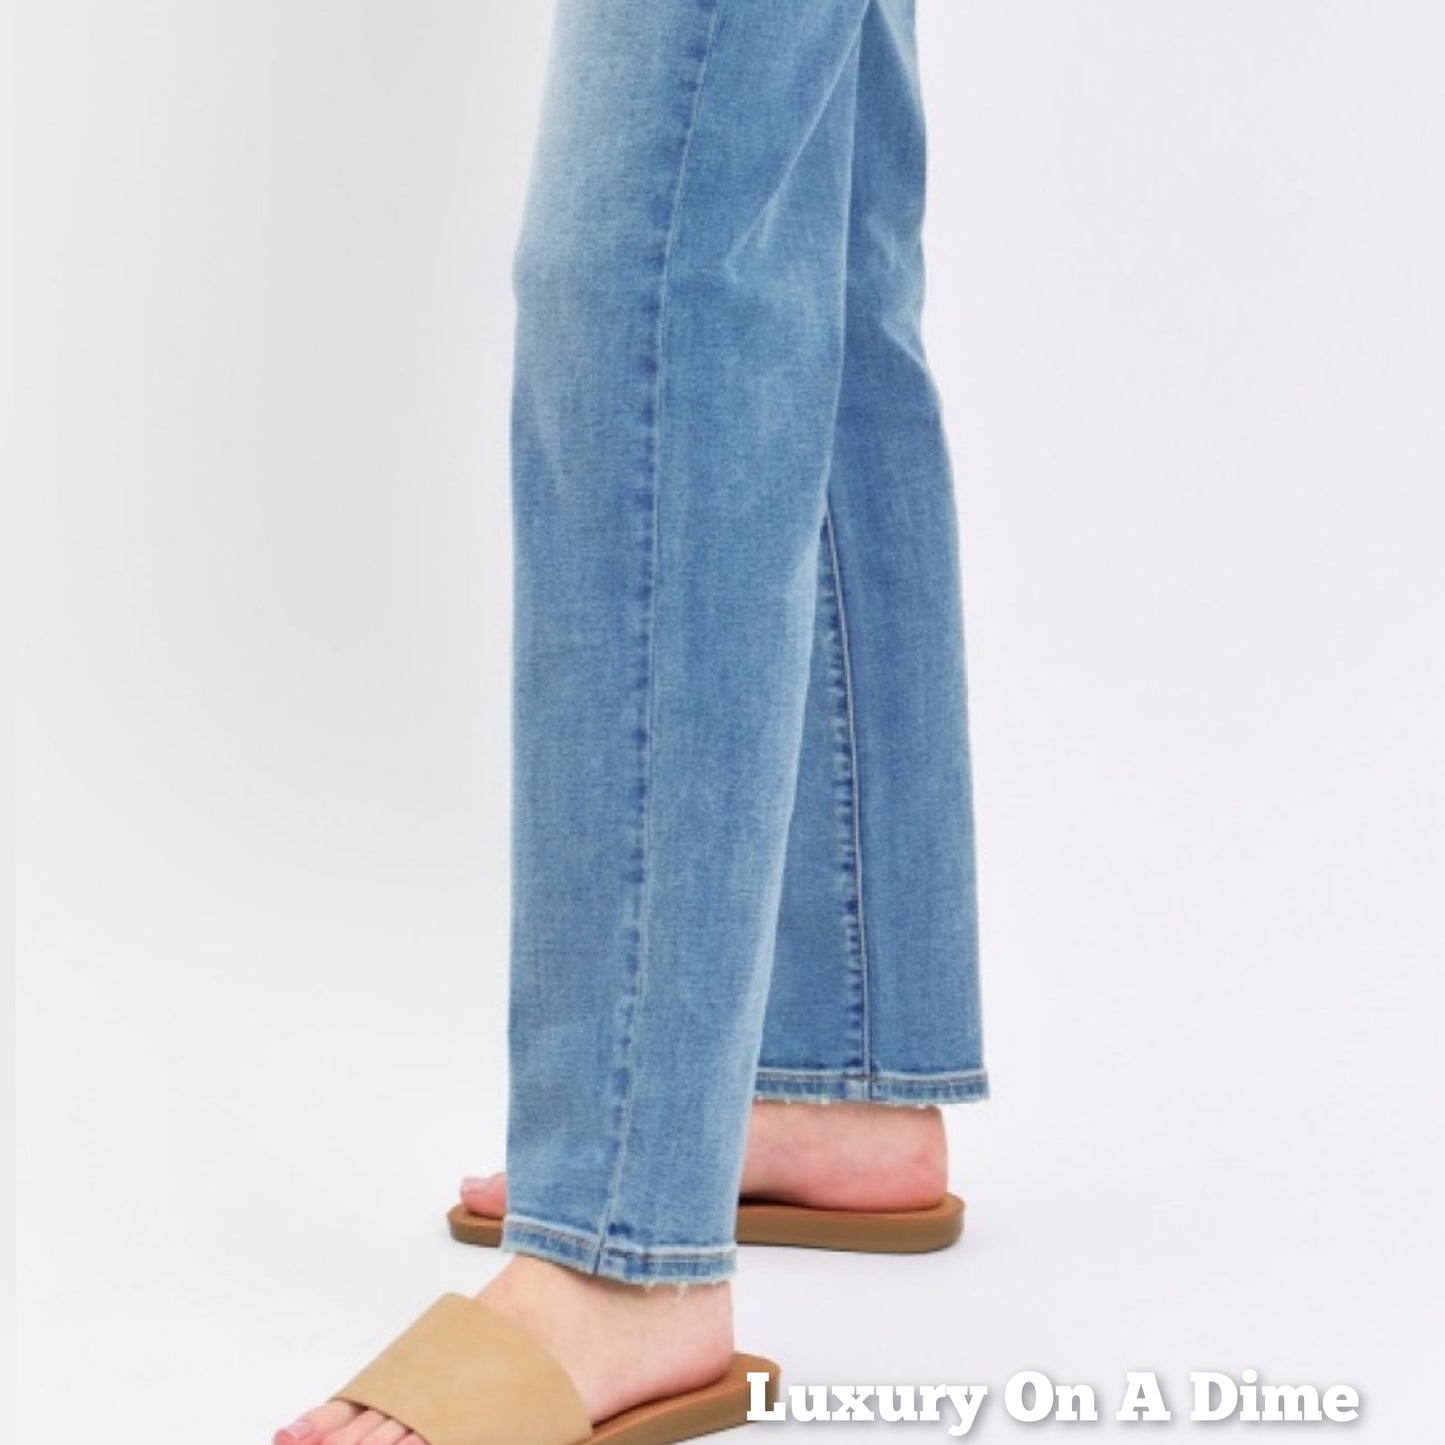 High Rise Waist Boyfriend Jeans Straight Leg Relaxed Fit Denim Pants Judy Blue